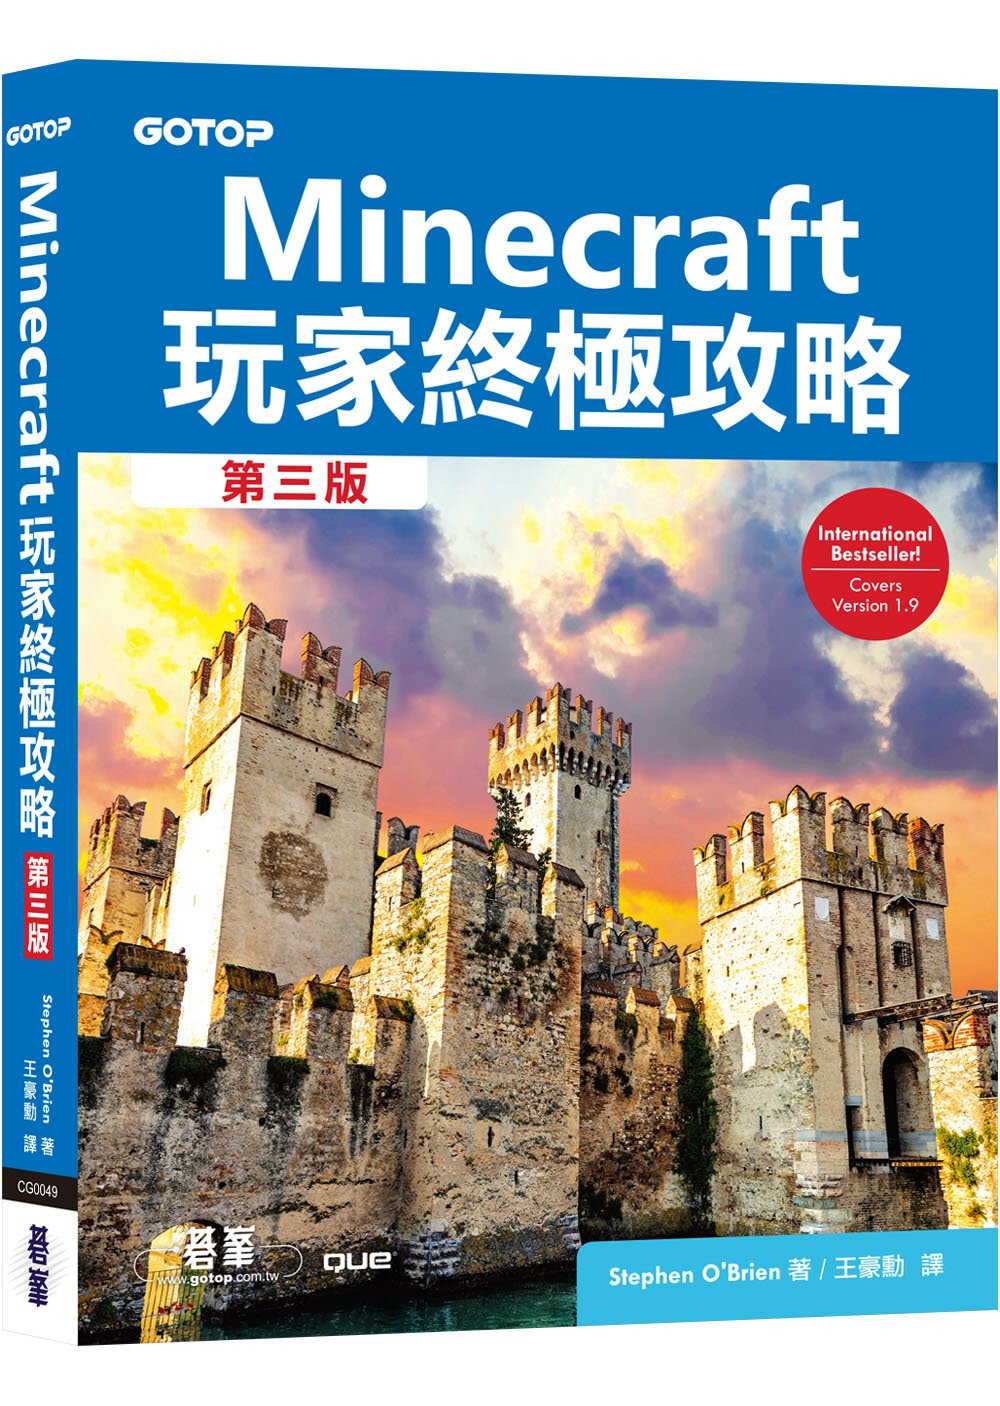 書籍 Minecraft 玩家終極攻略第三版 The Ultimate Player S Guide To Minecraft 3rd Edition 電腦資訊類 電腦資訊圖書 新書介紹 痞客邦